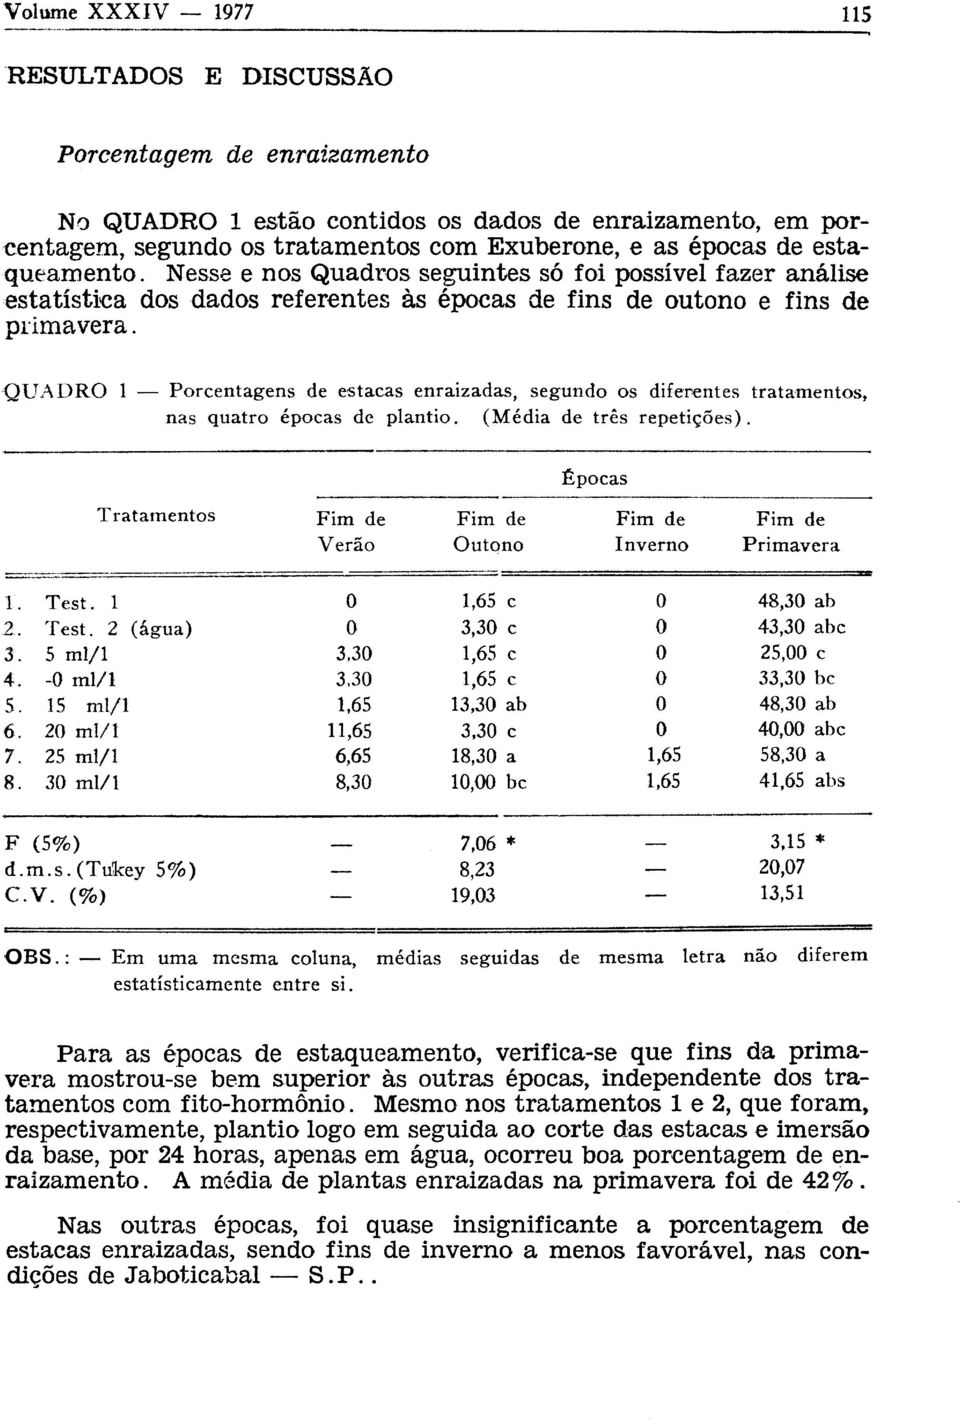 QUADRO 1 Porcentagens de estacas enraizadas, segundo os diferentes tratamentos, nas quatro épocas de plantio. (Média de três repetições).